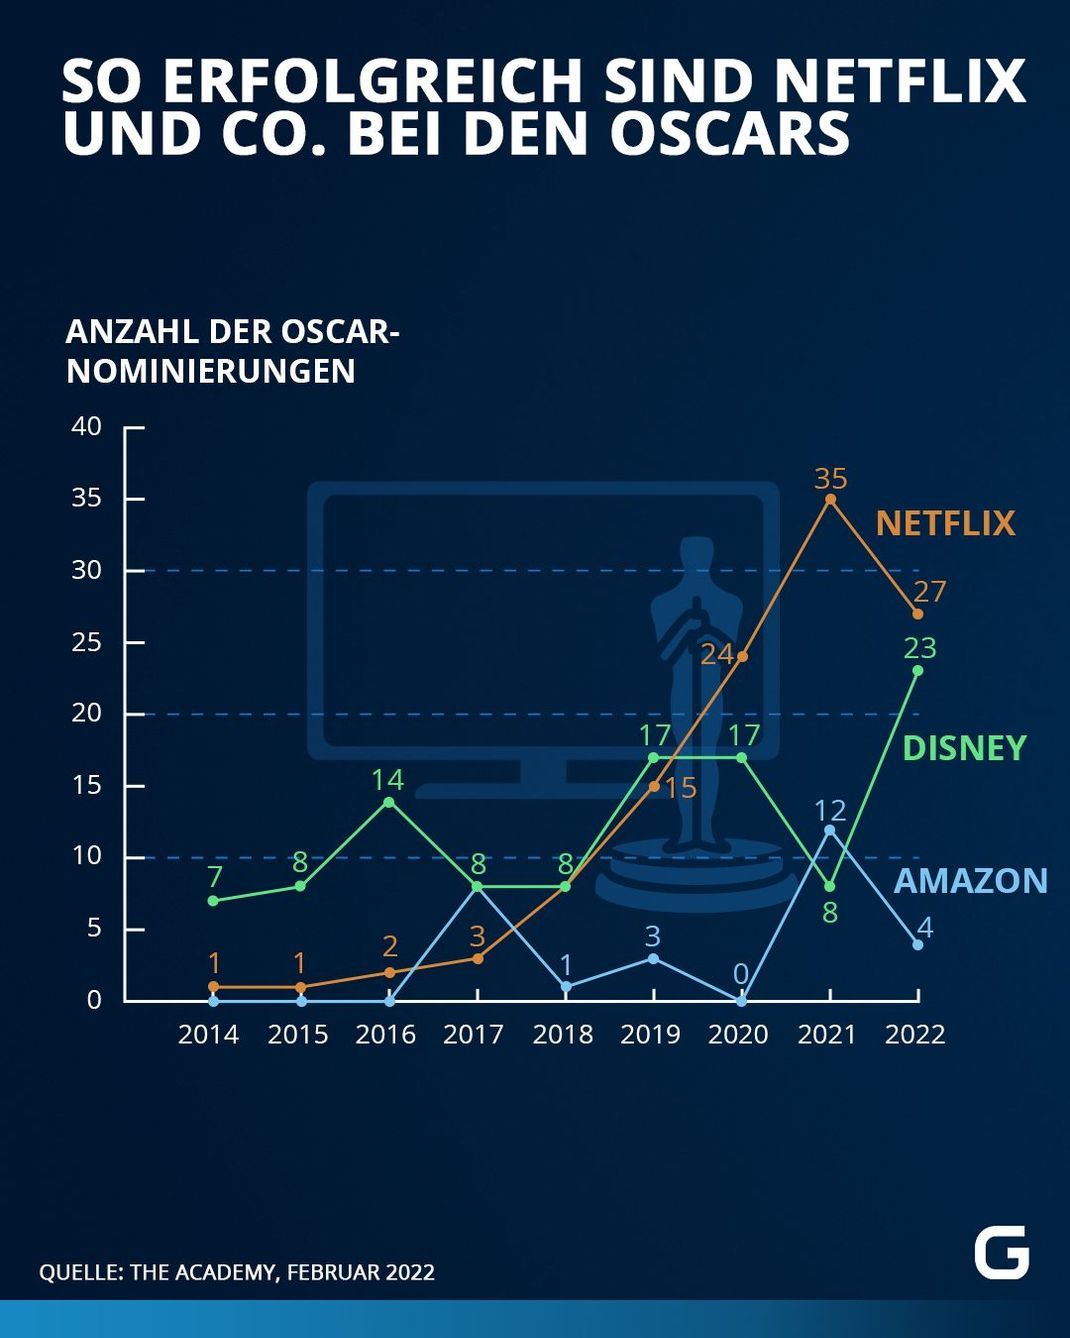 Anzahl der Oscar-Nominierungen bestimmter Studios (mit Streaming-Dienst) von 2014 bis 2022